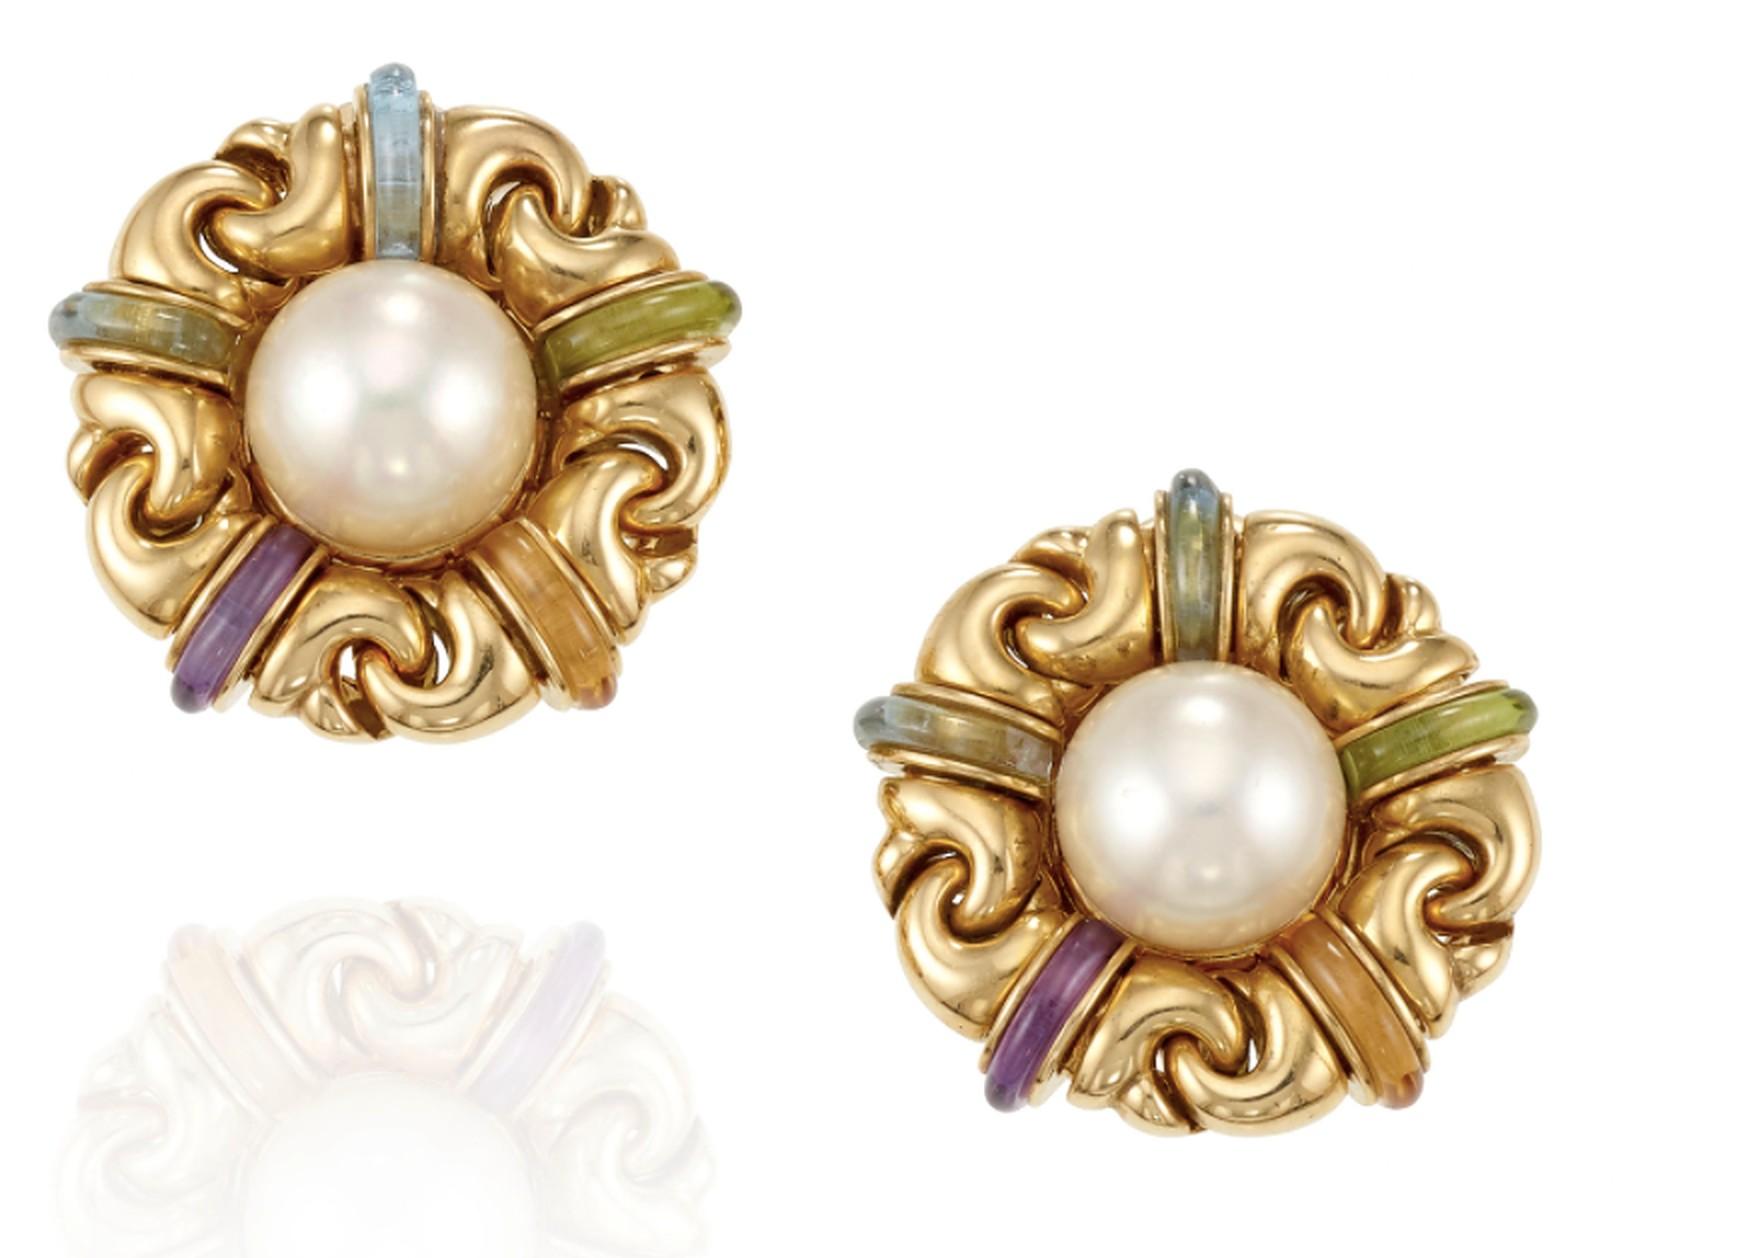 Mixed Cut Bulgari Gancio Pearl and Multi-Gem Gold Earrings